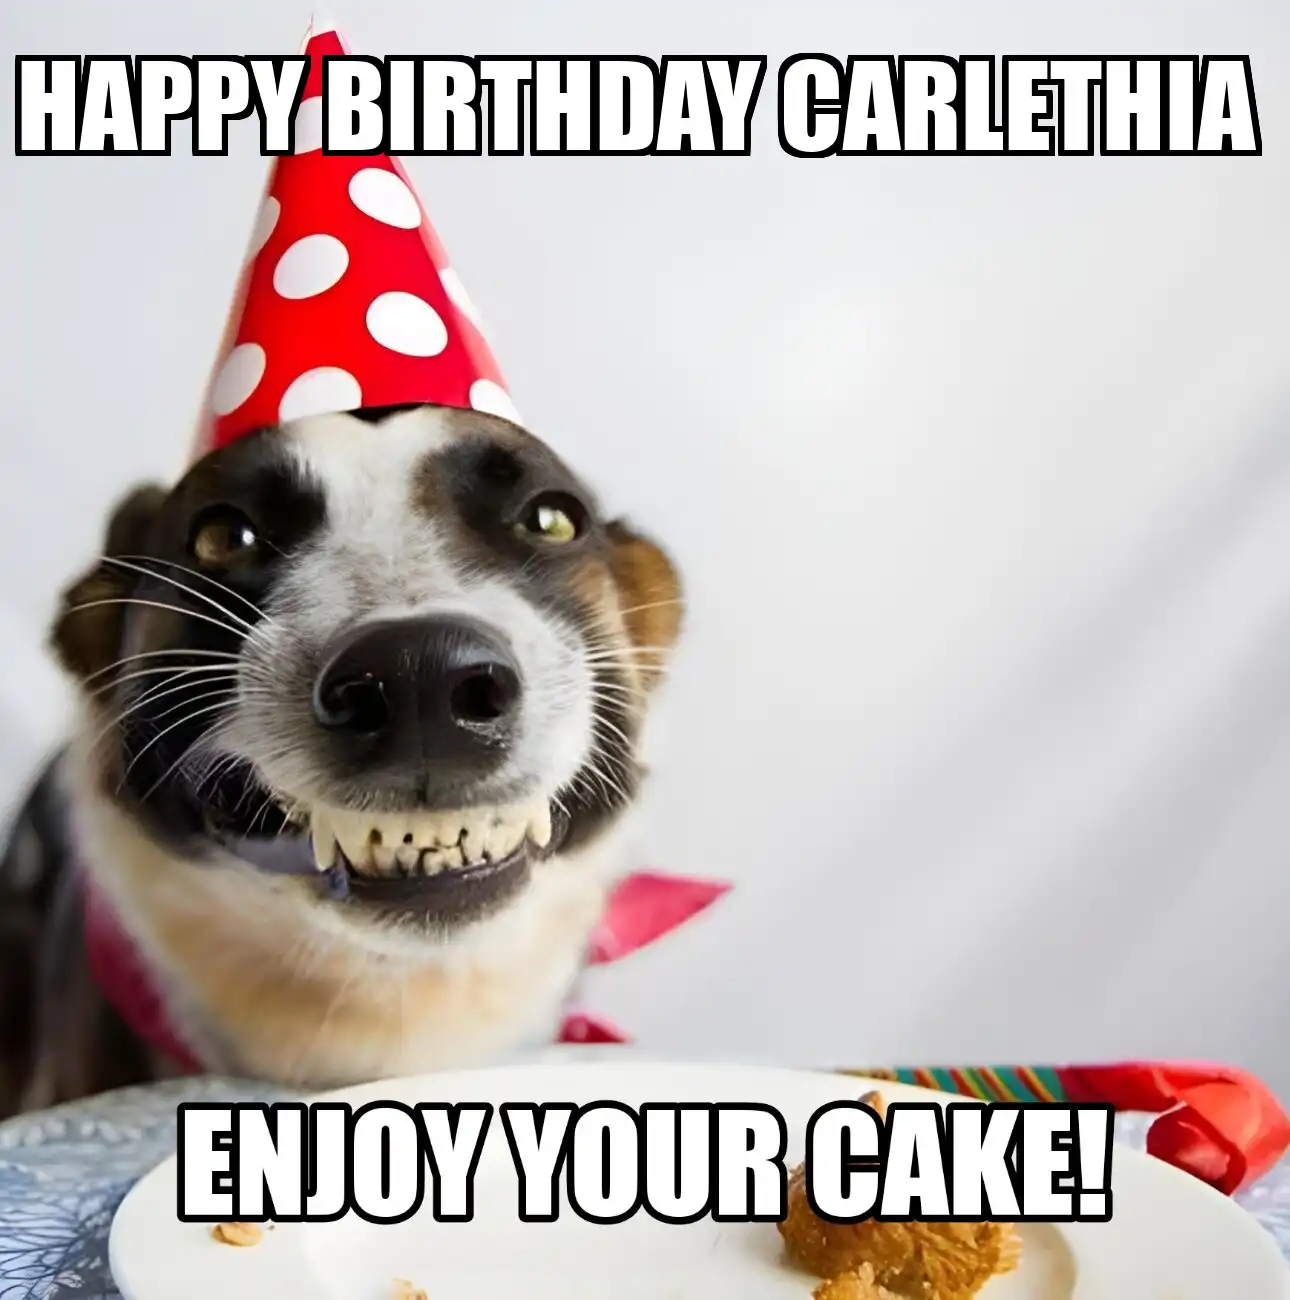 Happy Birthday Carlethia Enjoy Your Cake Dog Meme